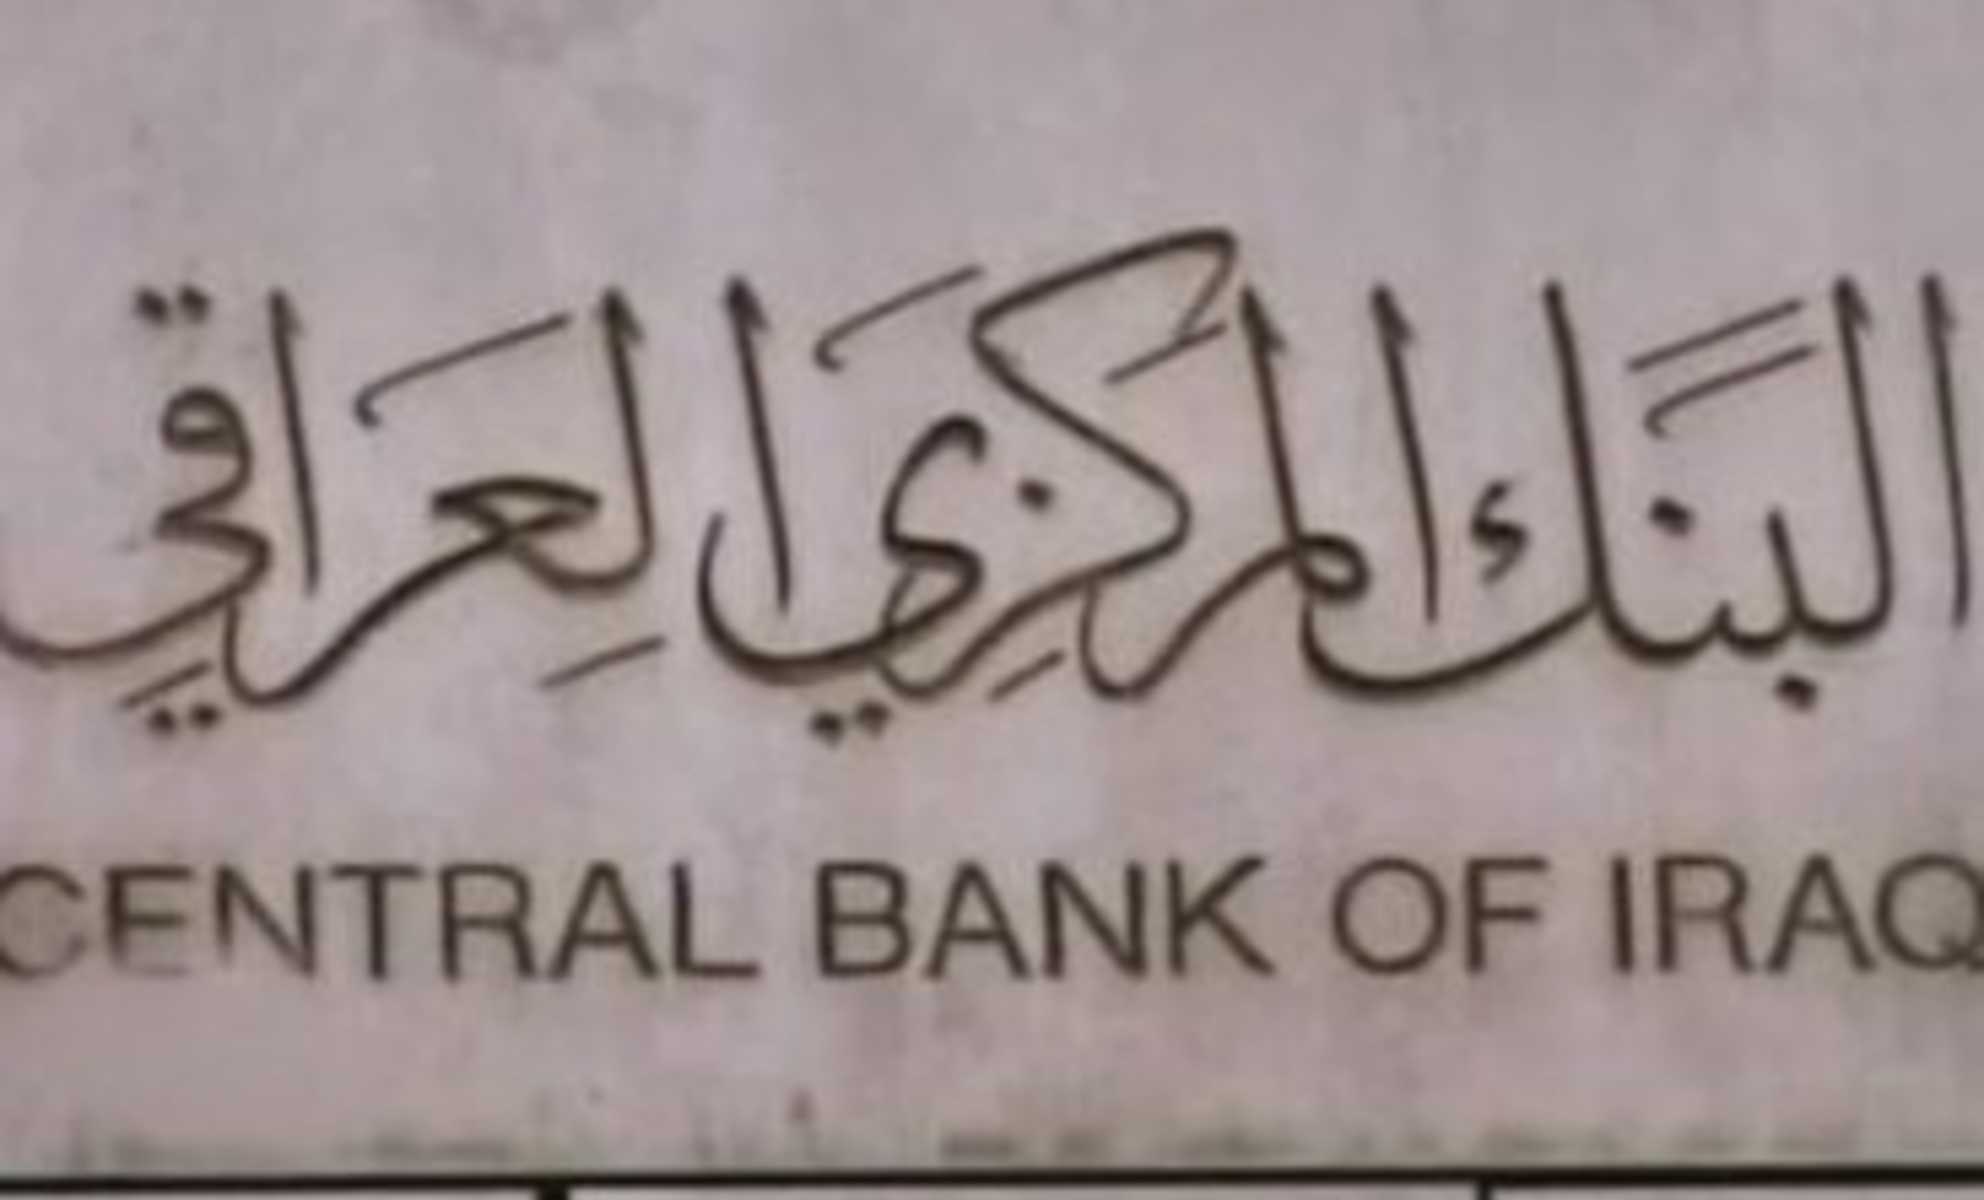 البنك المركزي باع أكثر من (700) مليون دولار خلال الأسبوع الماضي معظمها ذهبت إلى إيران!